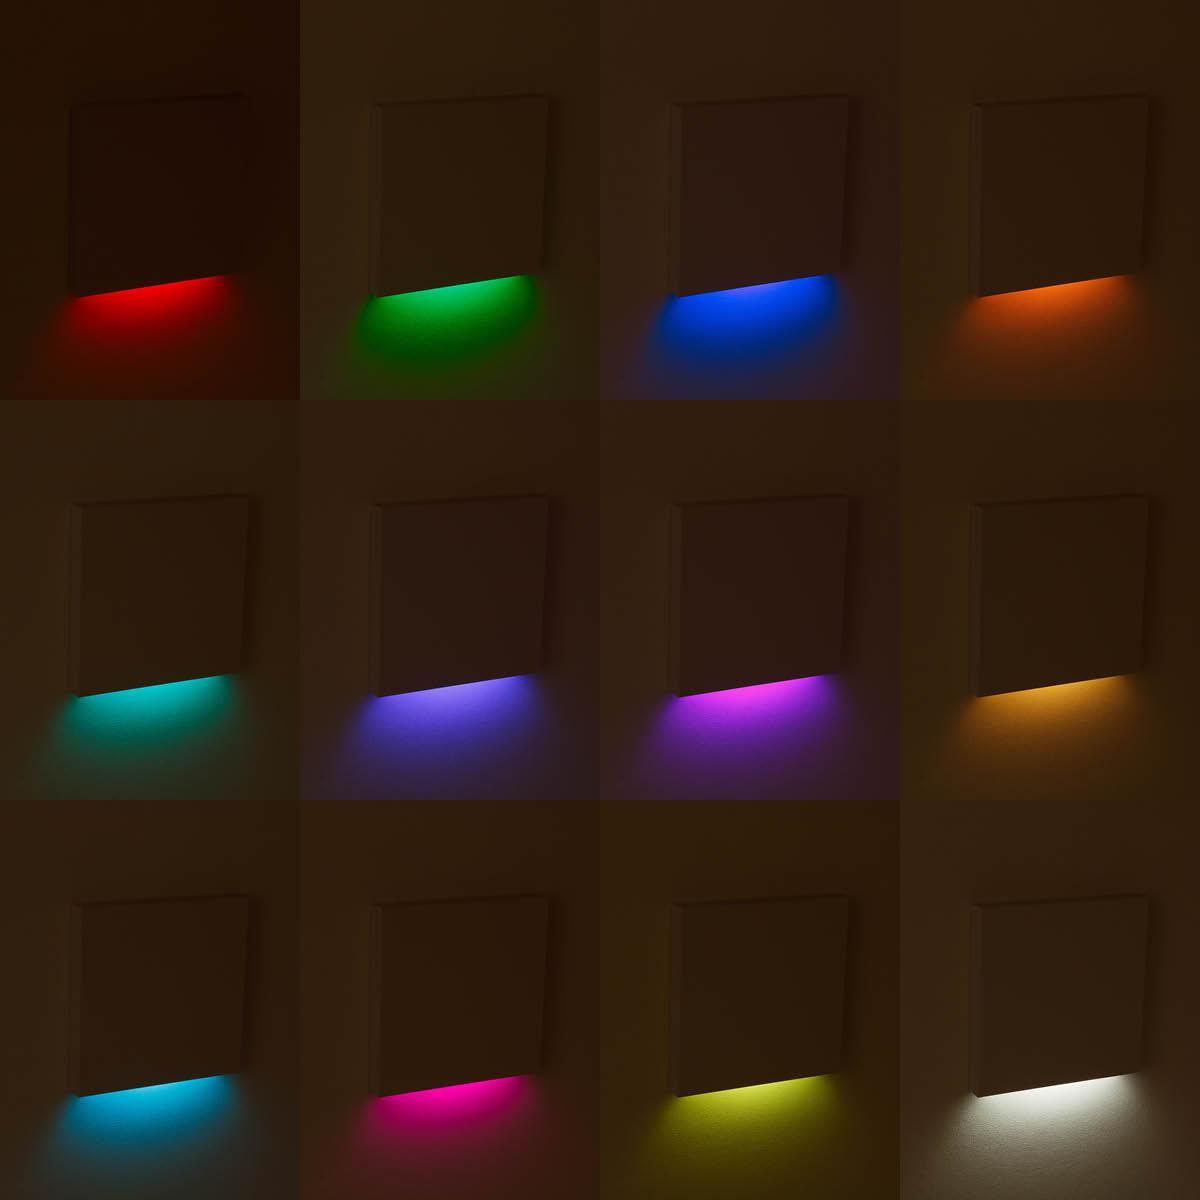 LED Treppenleuchte eckig weiß 230V - Lichtfarbe: RGB Warmweiß 3W - Lichtaustritt: Kato